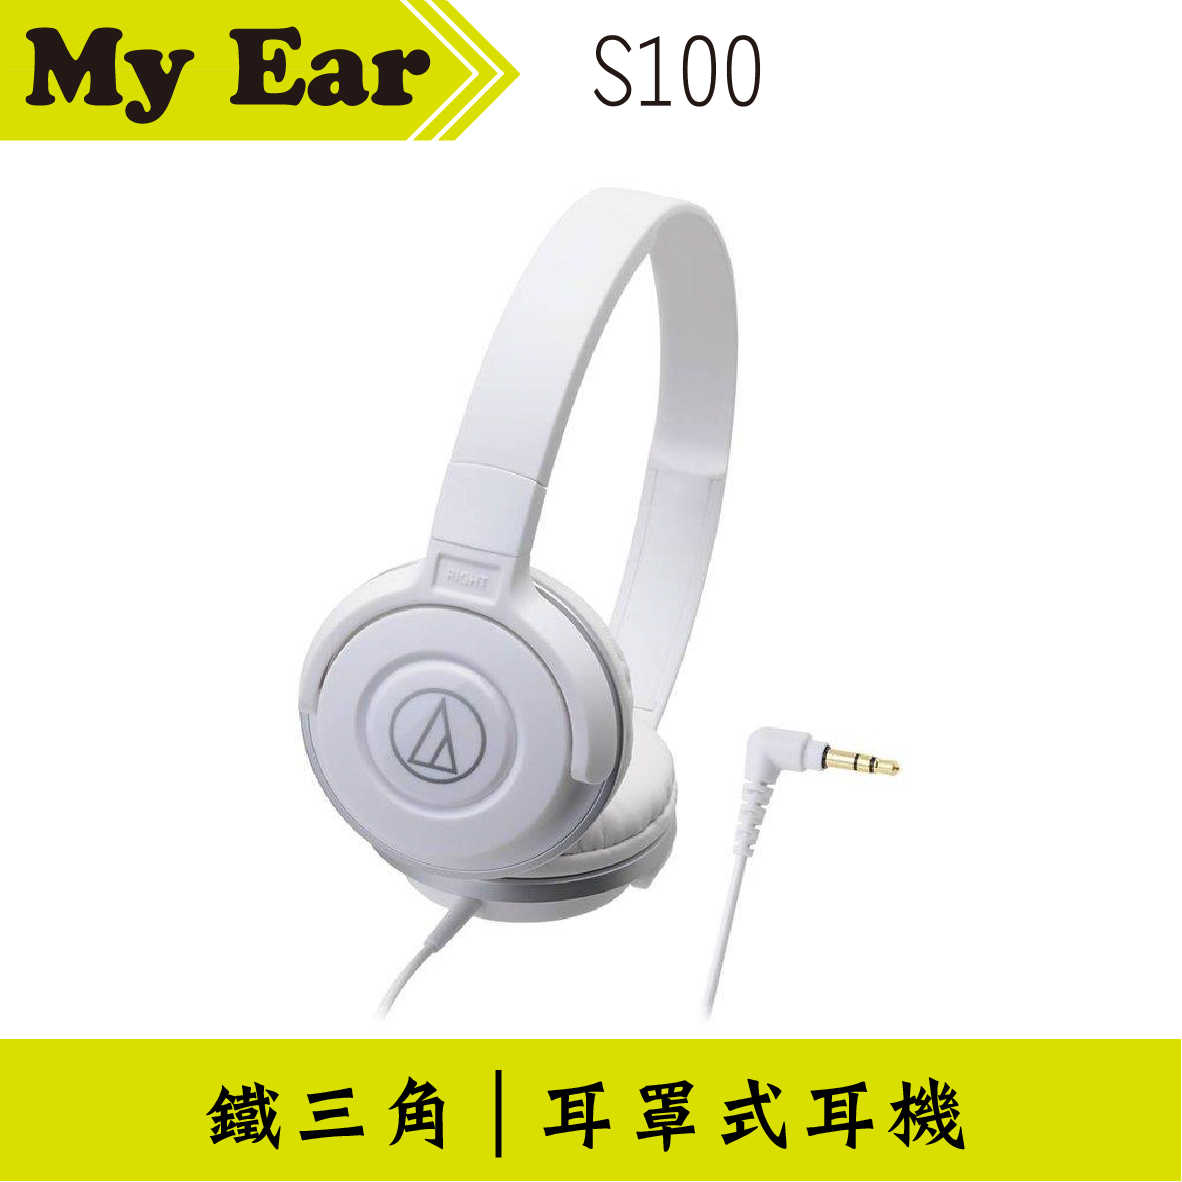 鐵三角 ATH-S100 耳罩式耳機 白色 | My Ear 耳機專門店